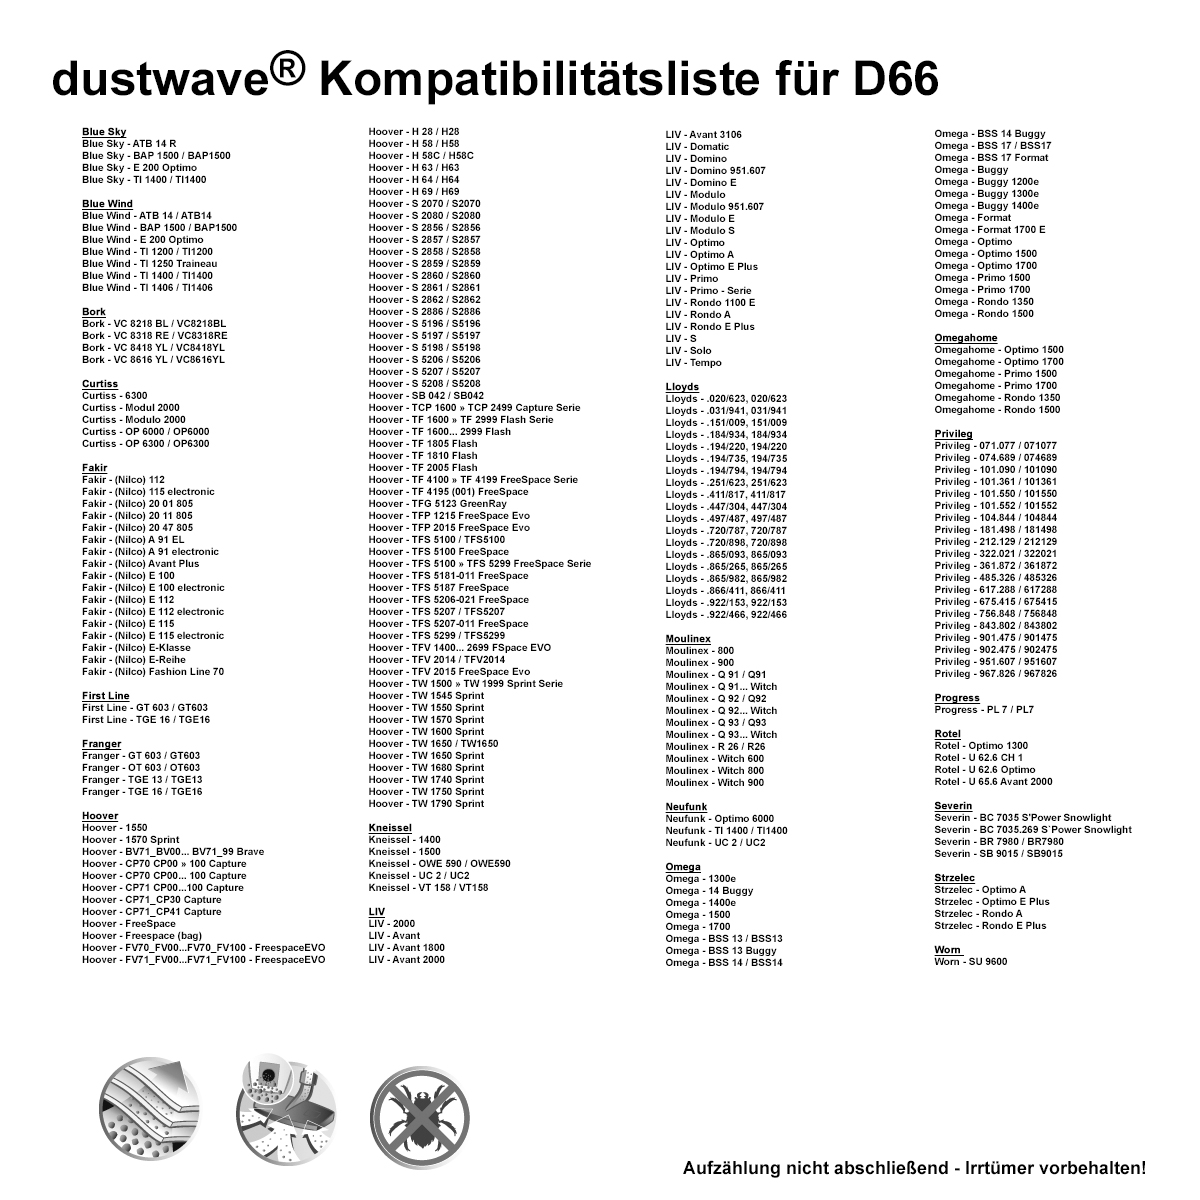 Dustwave® 10 Staubsaugerbeutel für Hoover S2857 / S2857 - hocheffizient, mehrlagiges Mikrovlies mit Hygieneverschluss - Made in Germany